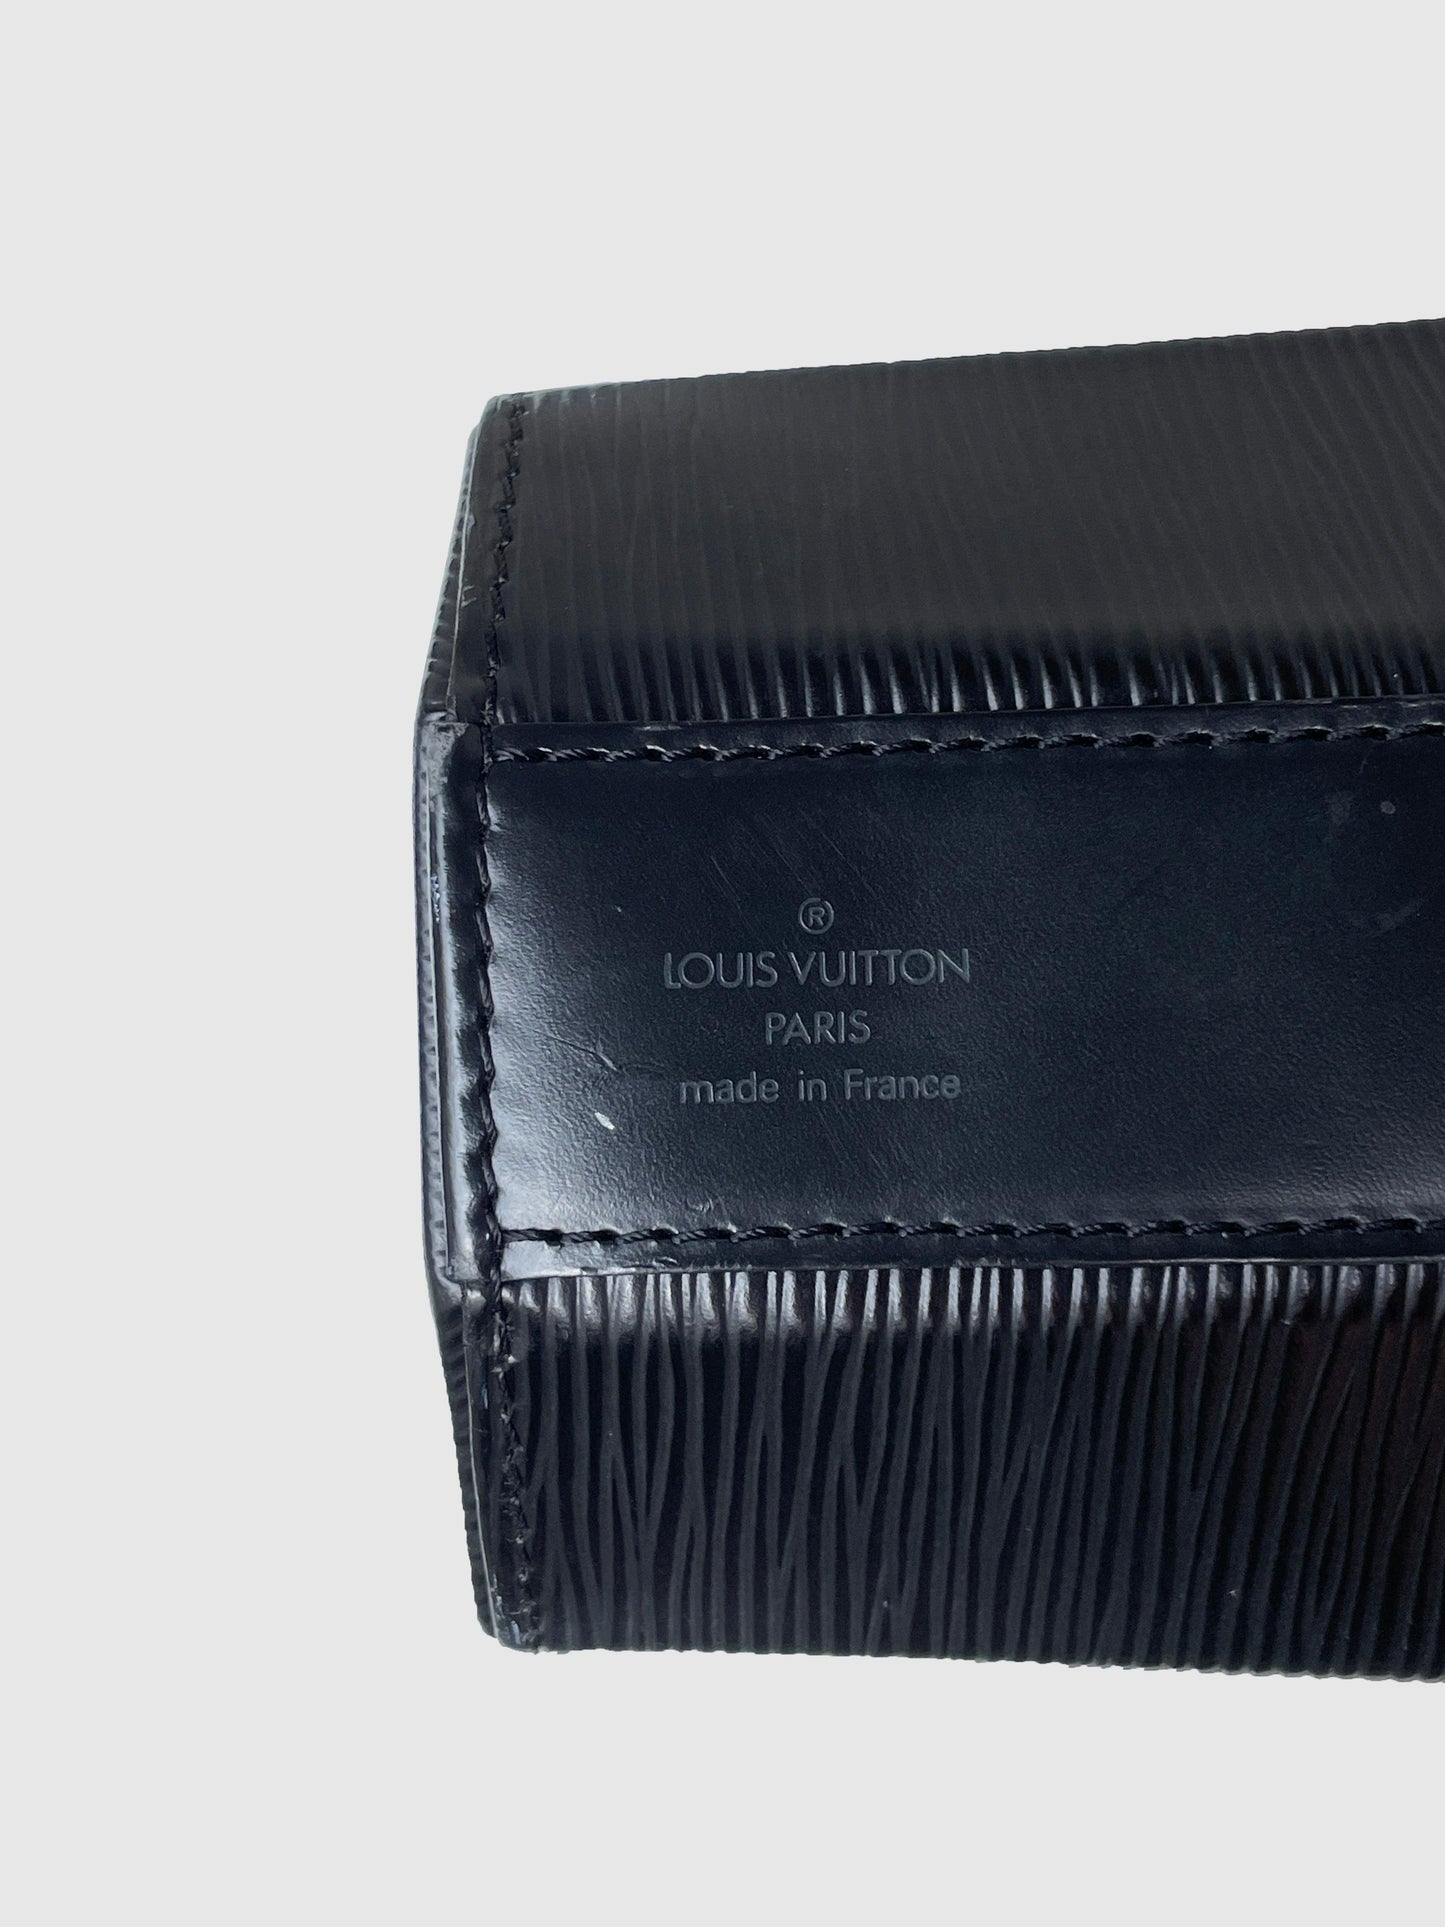 Louis Vuitton "Sac Seau" - Second Nature Boutique